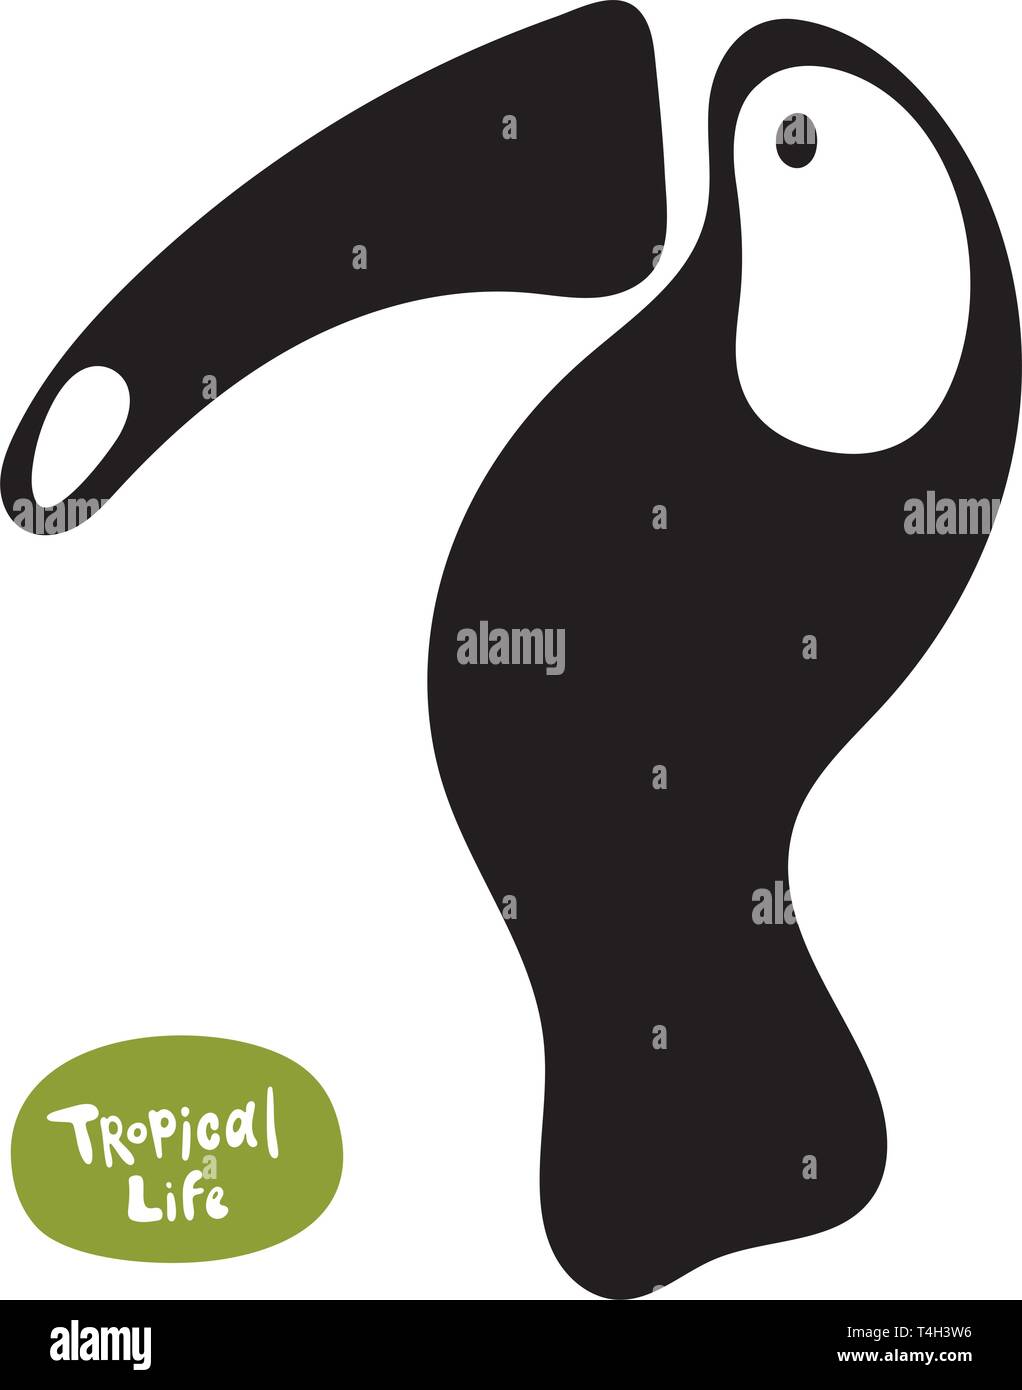 Vektor isolierte Doodle, handgezeichnete Tukan-Silhouette auf weißem  Hintergrund. Schöner exotischer Vogel des Amazonas-Regenwaldes  Stock-Vektorgrafik - Alamy